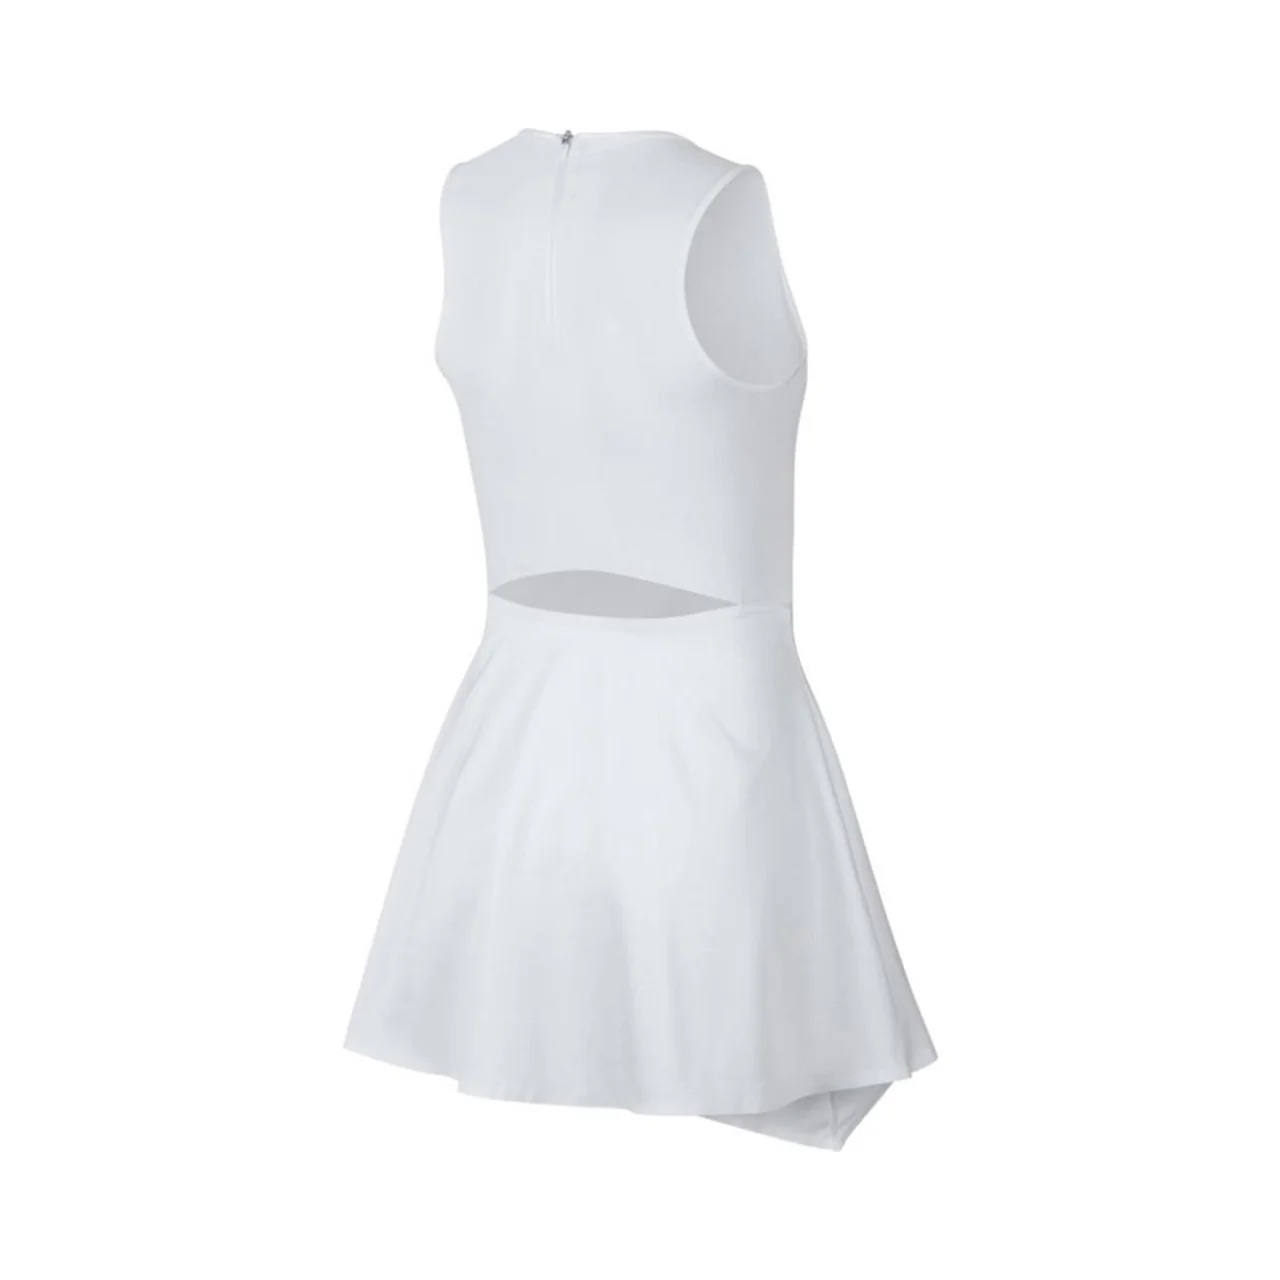 Nike Maria Sharapova Dress All White